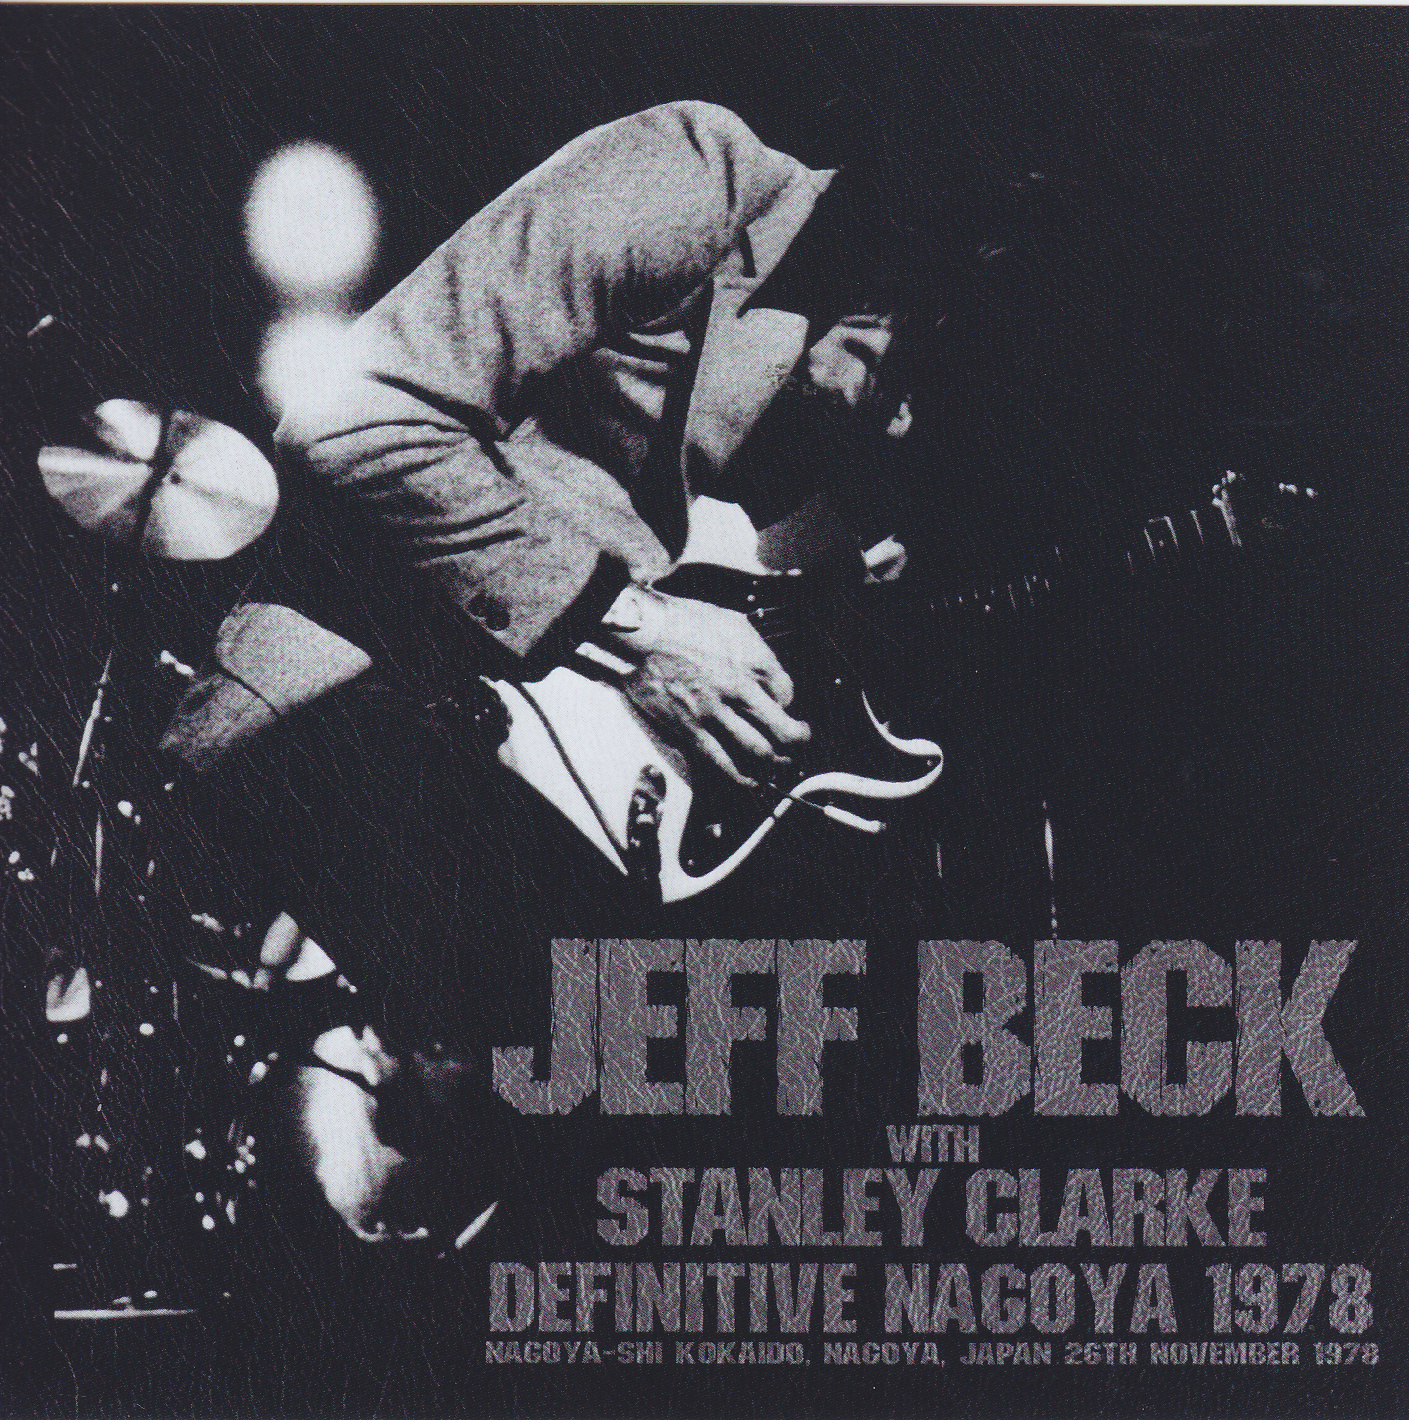 JEFF BECK WITH STANLEY CLARK/DEFEITVE NAGOYA 1978 DEFENITIVE MASTER 2CD - CD